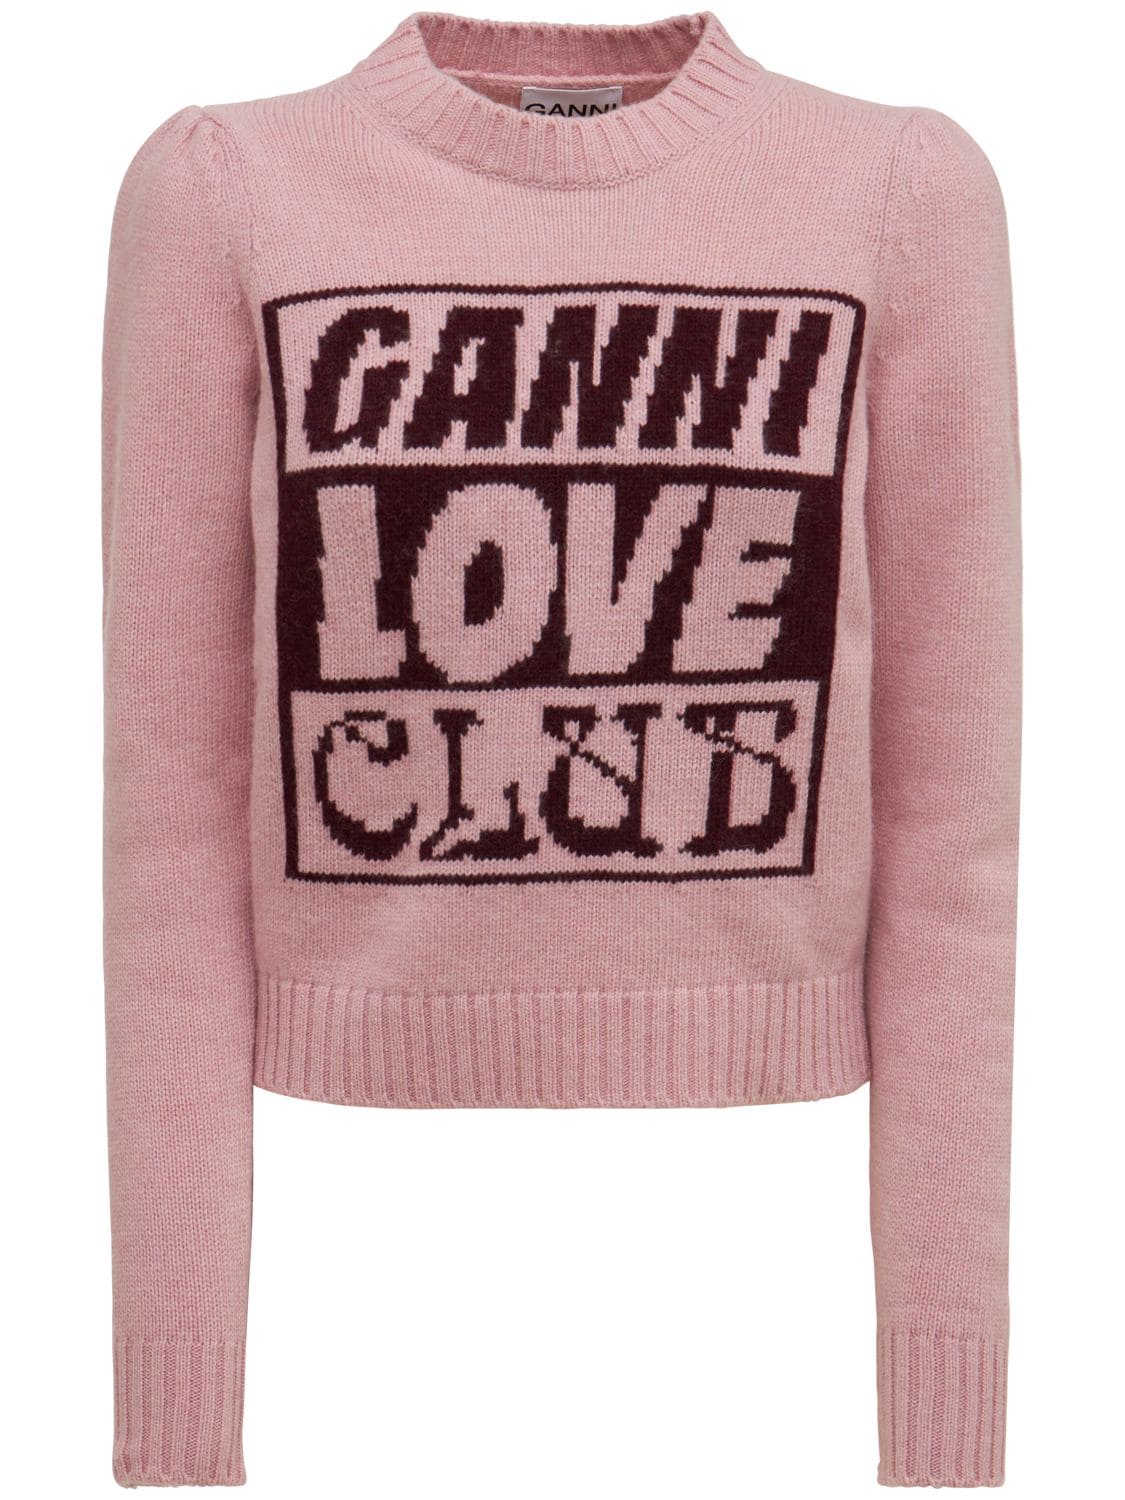 GANNI Logo Intarsia Lambs Wool Sweater